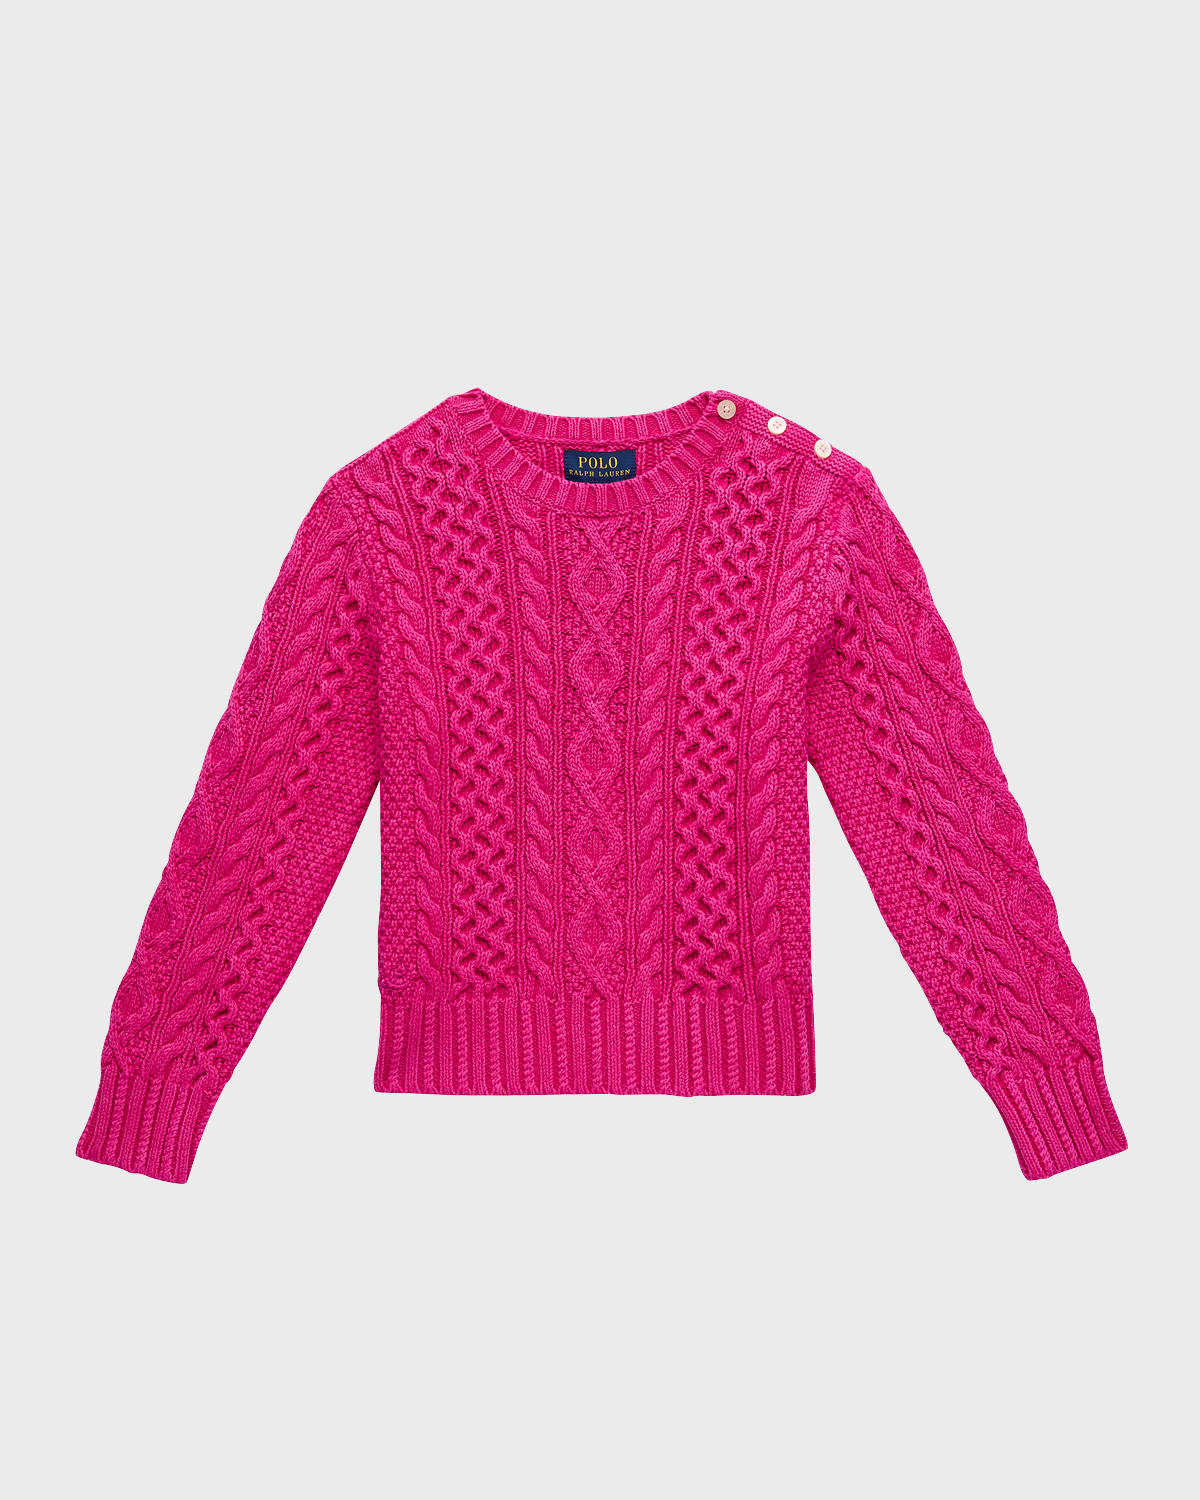 Ralph Lauren Kids' Girl's Aran-knit Cotton Jumper In Accent Pink